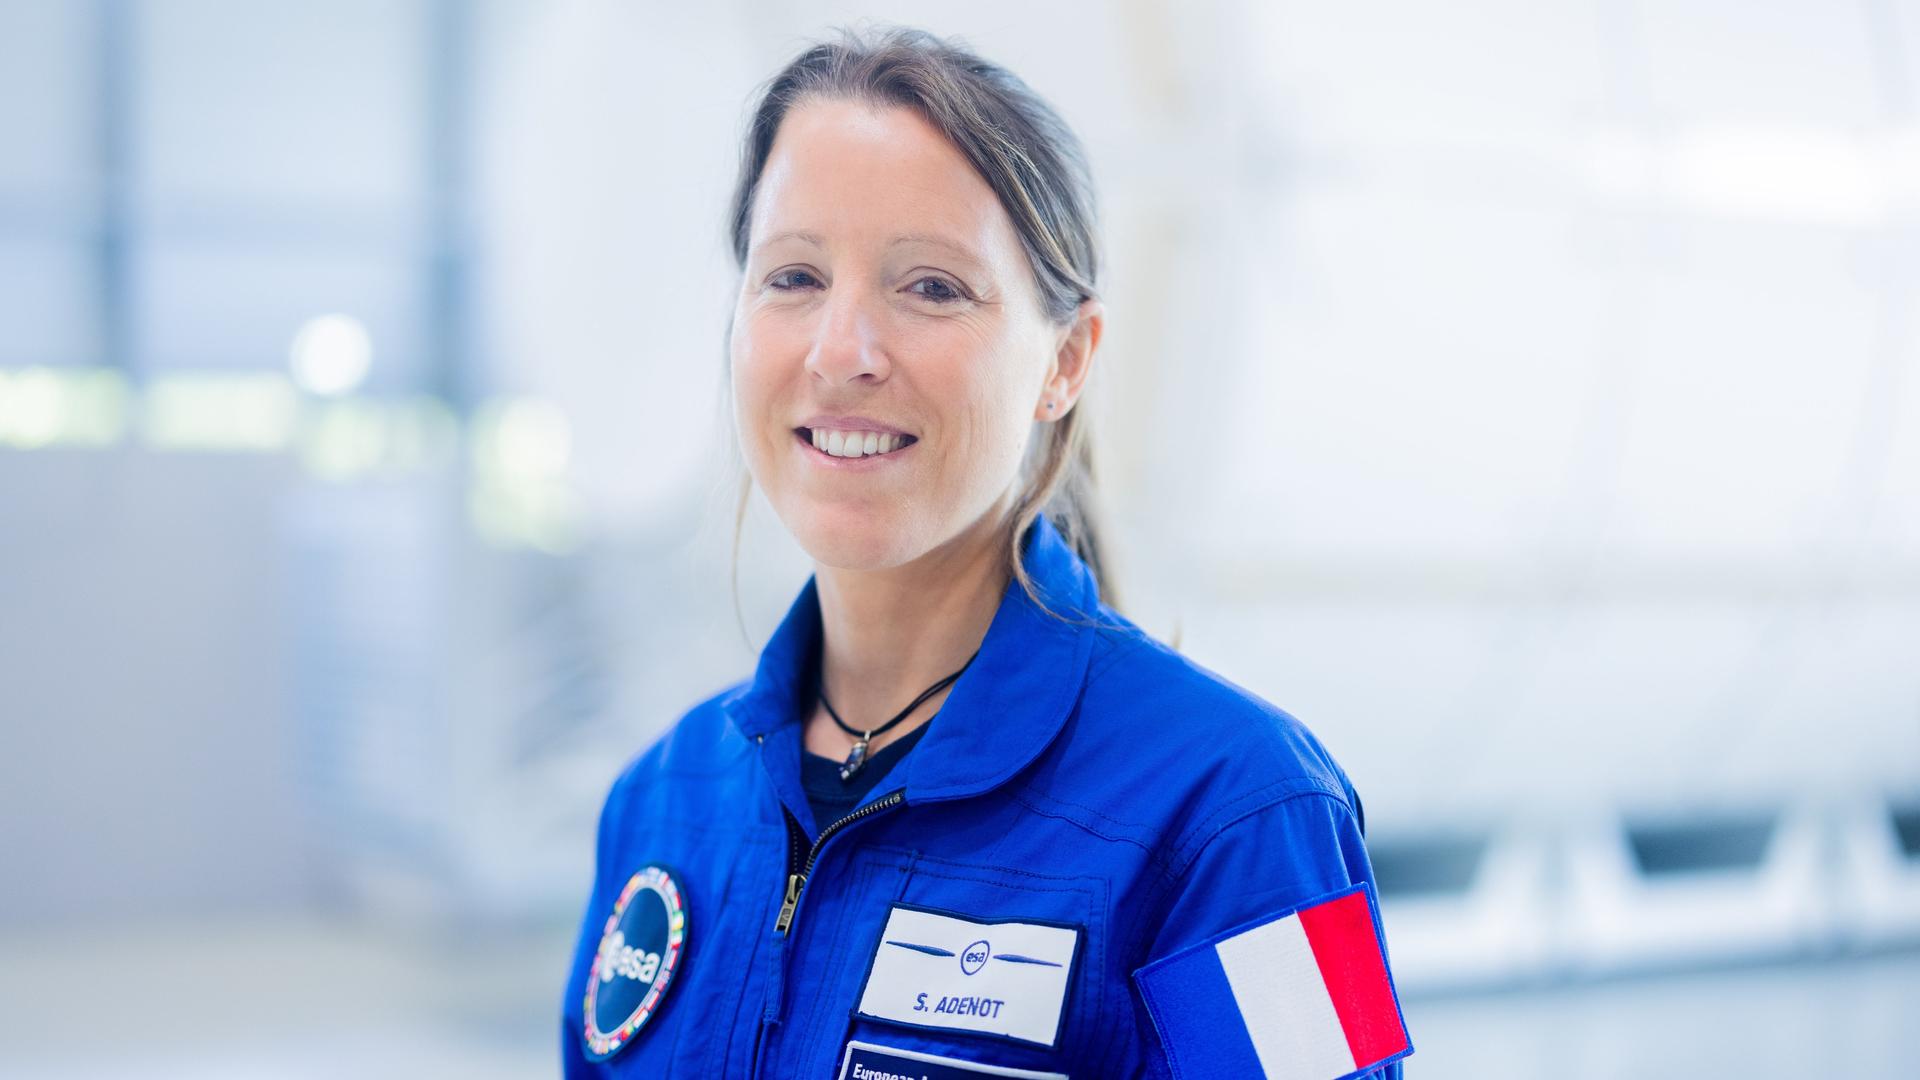 Sophie Adenot aus Frankreich lächelt in die Kamera. Sie trägt einen blauen Anzug der ESA.